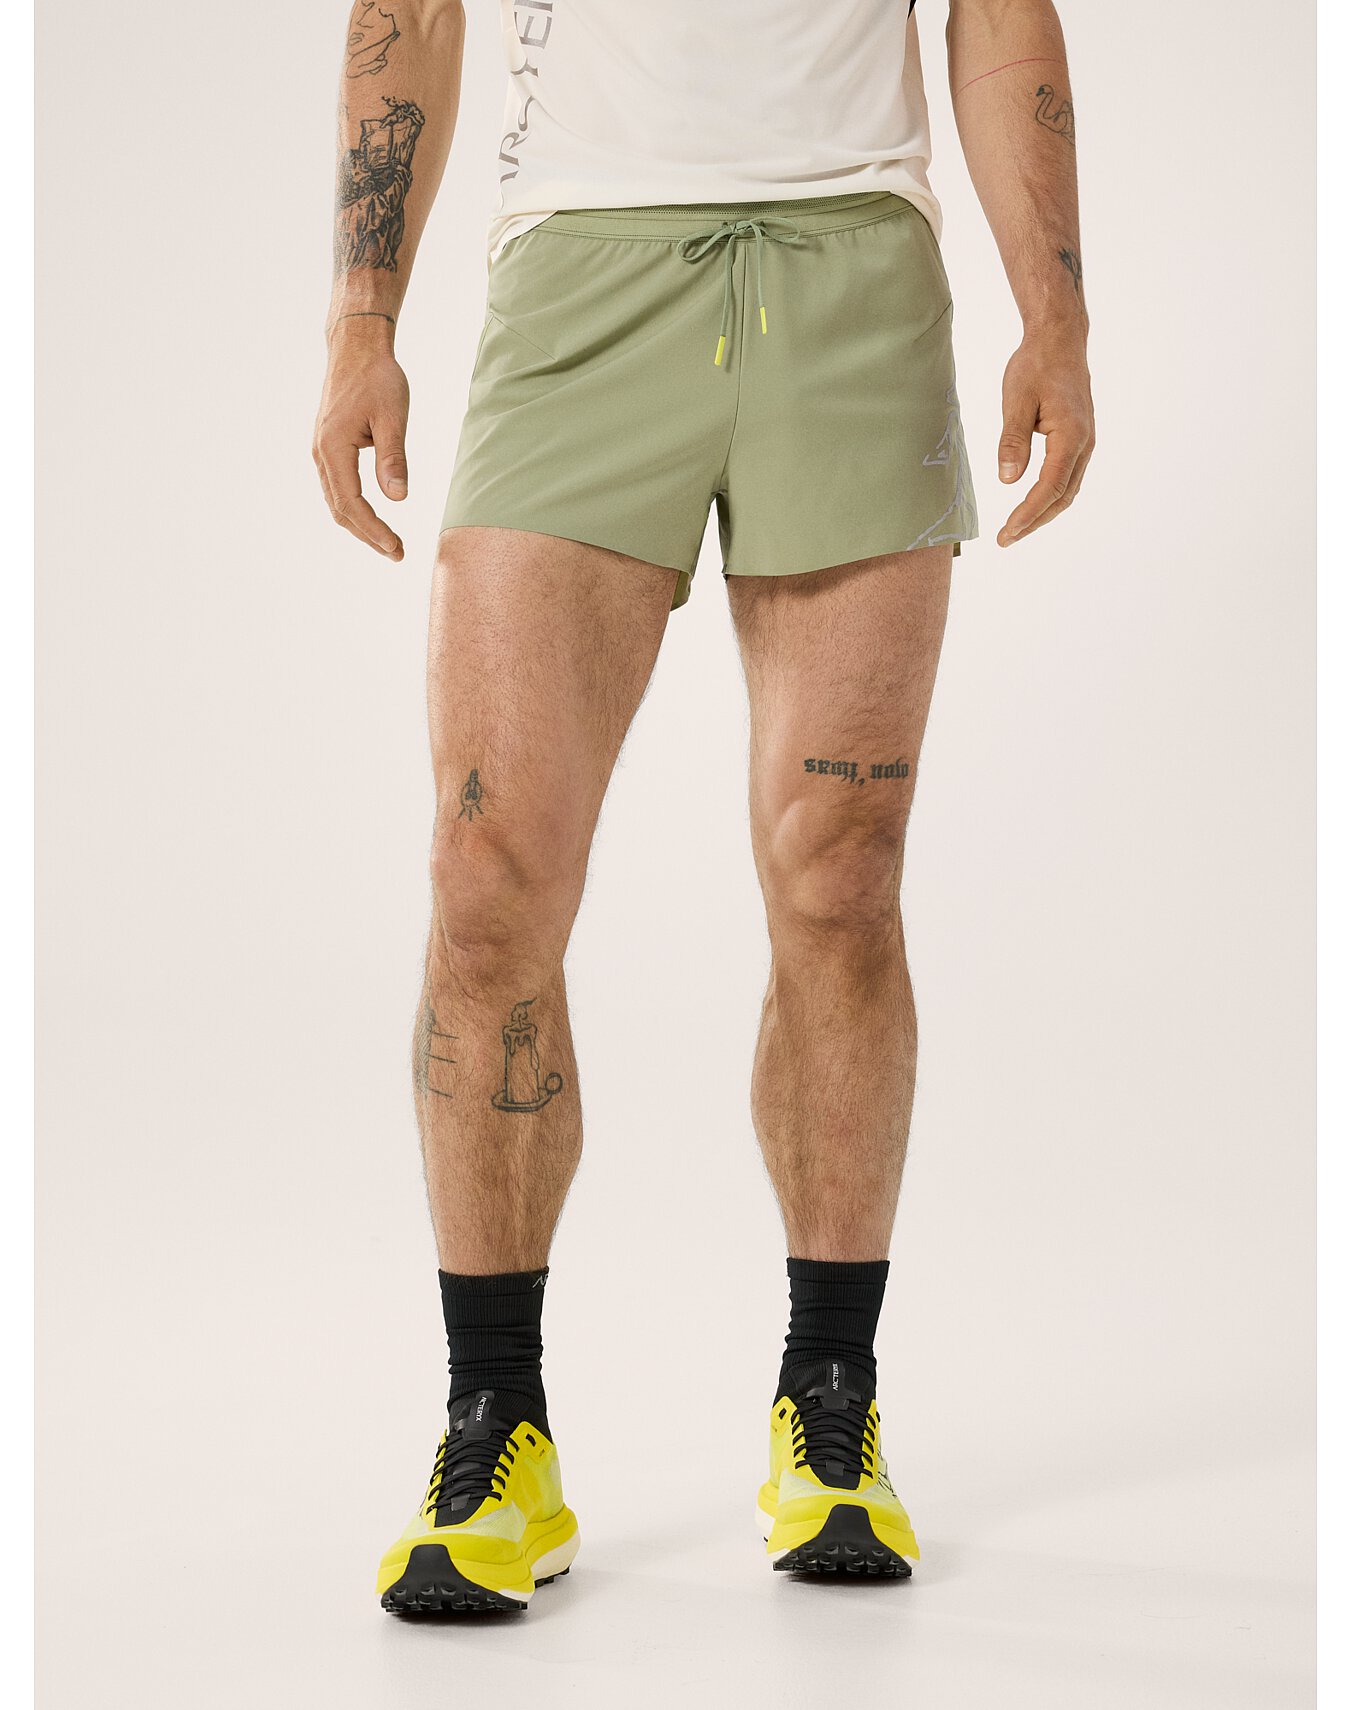 Men's Shorts | Arc'teryx